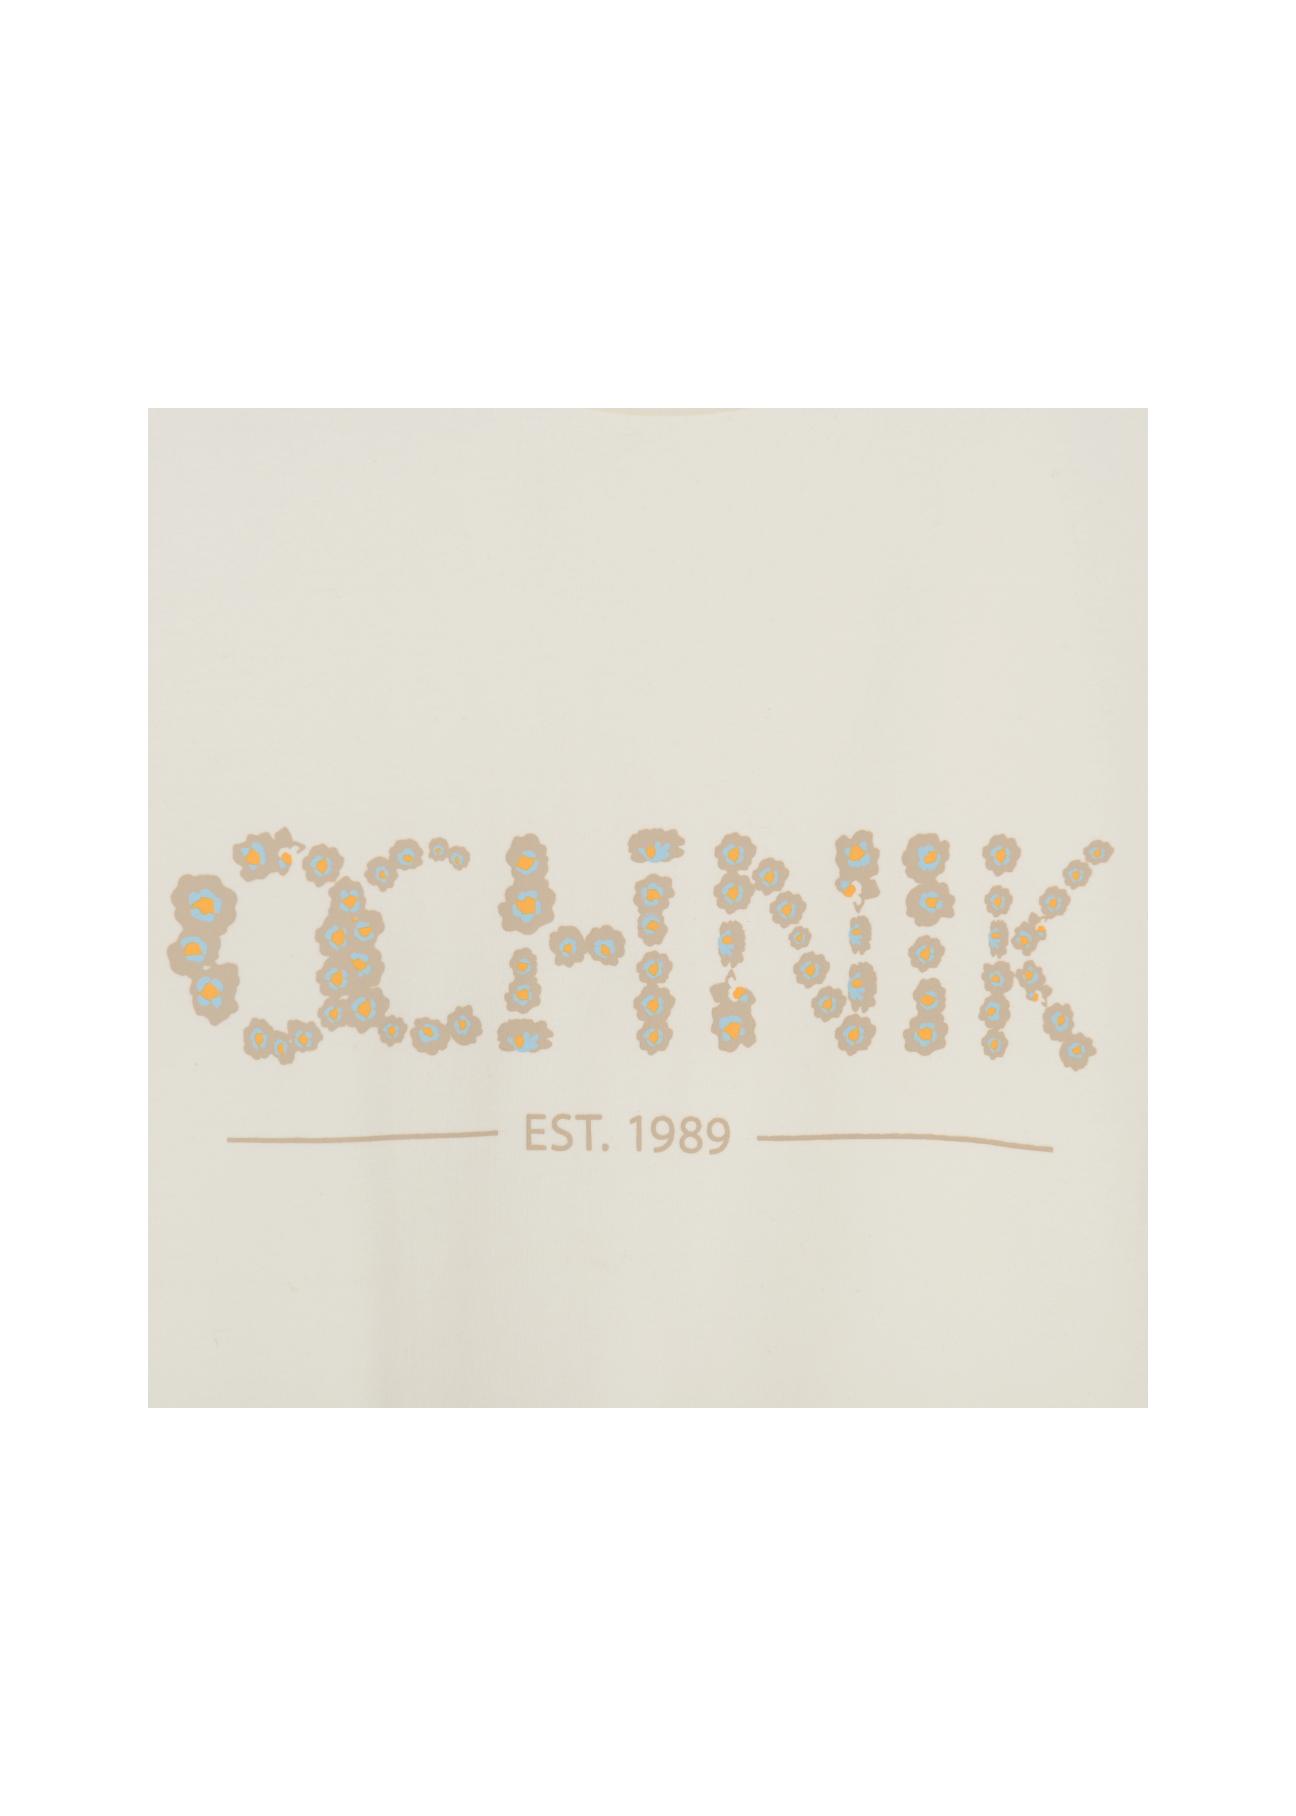 Mleczny T-shirt damski z logo OCHNIK TSHDT-0091-12(W22)